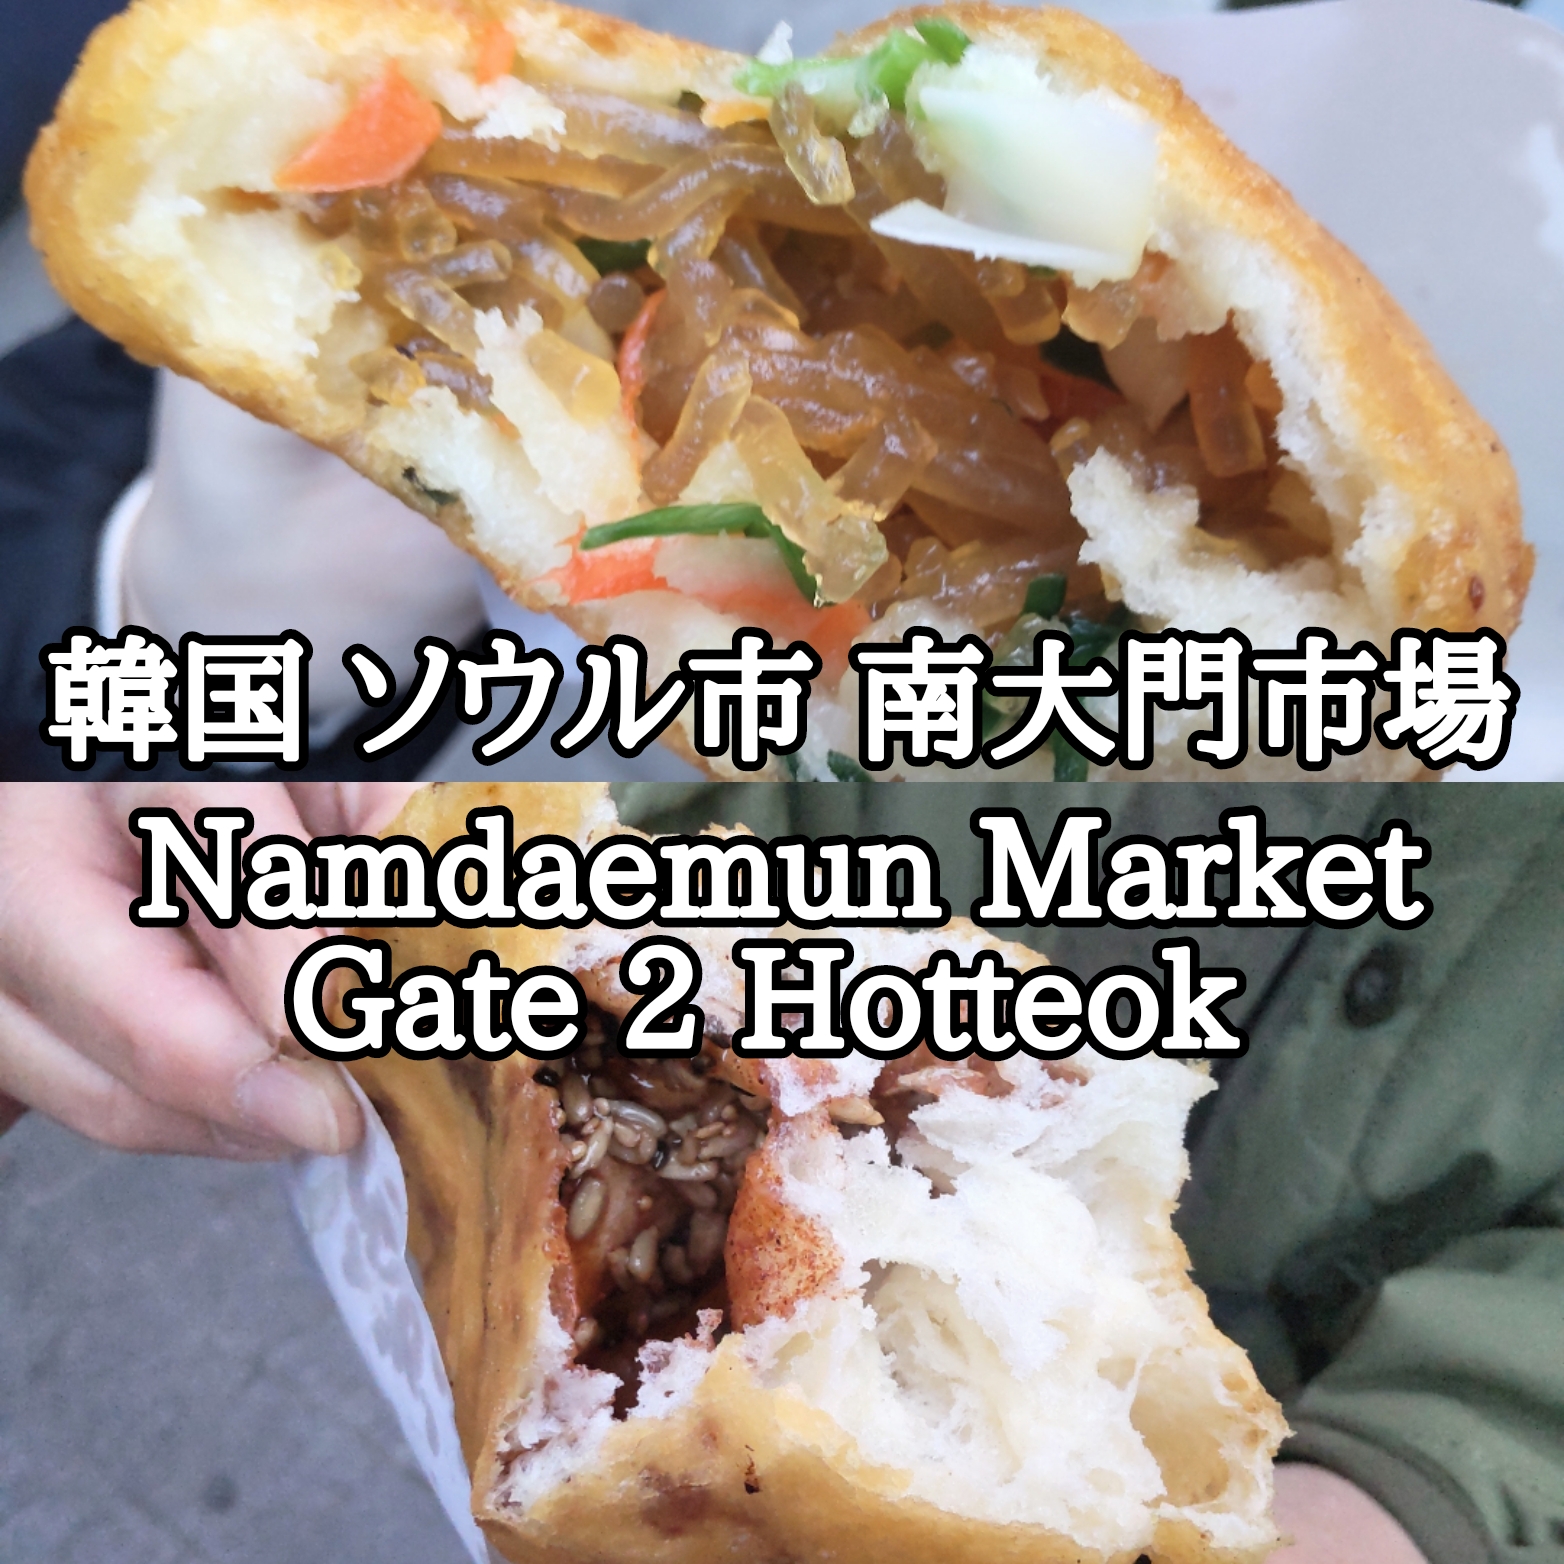 【韓国】【ソウル市】【中区】「南大門市場」「Namdaemun Market Gate 2 Hotteok」ほっとく訳にはいかない行列のできる屋台のホットク屋さん